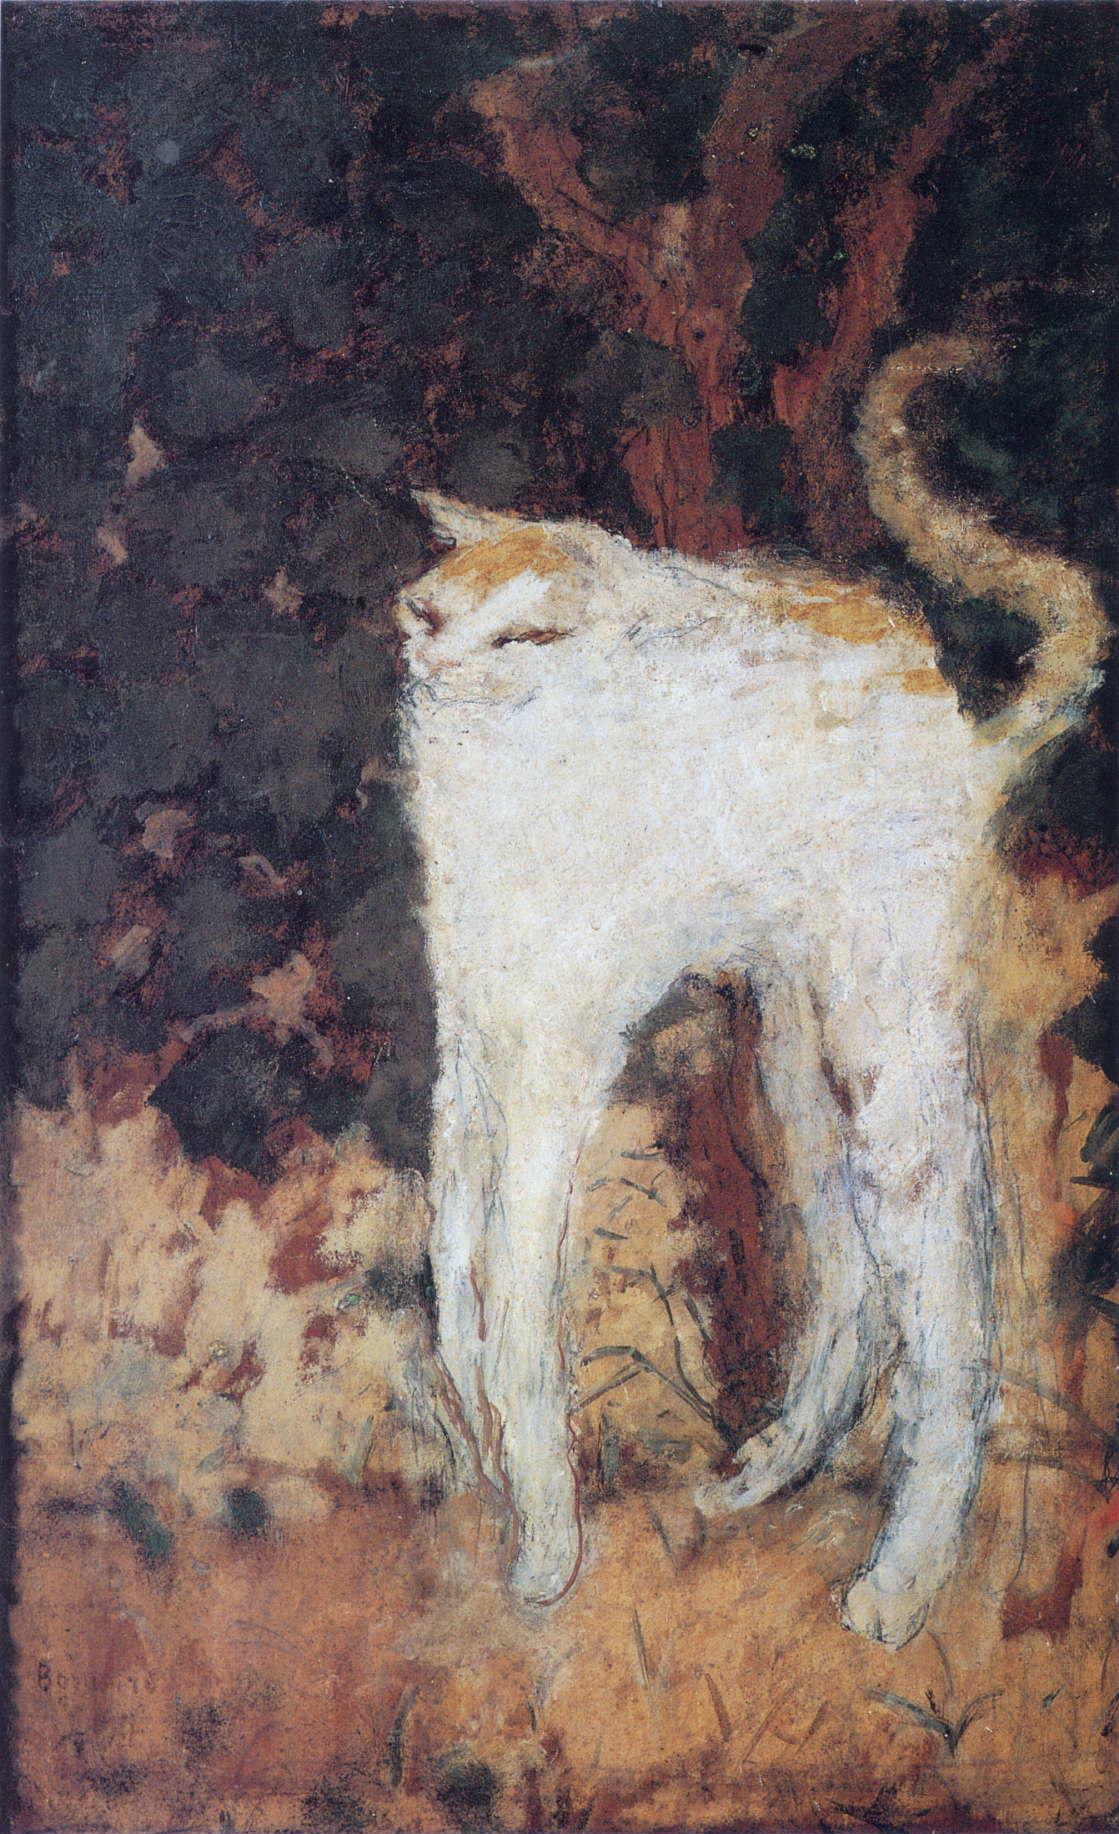 The White Cat by Pierre Bonnard - 1894 - 51 x 33 cm Musée d'Orsay